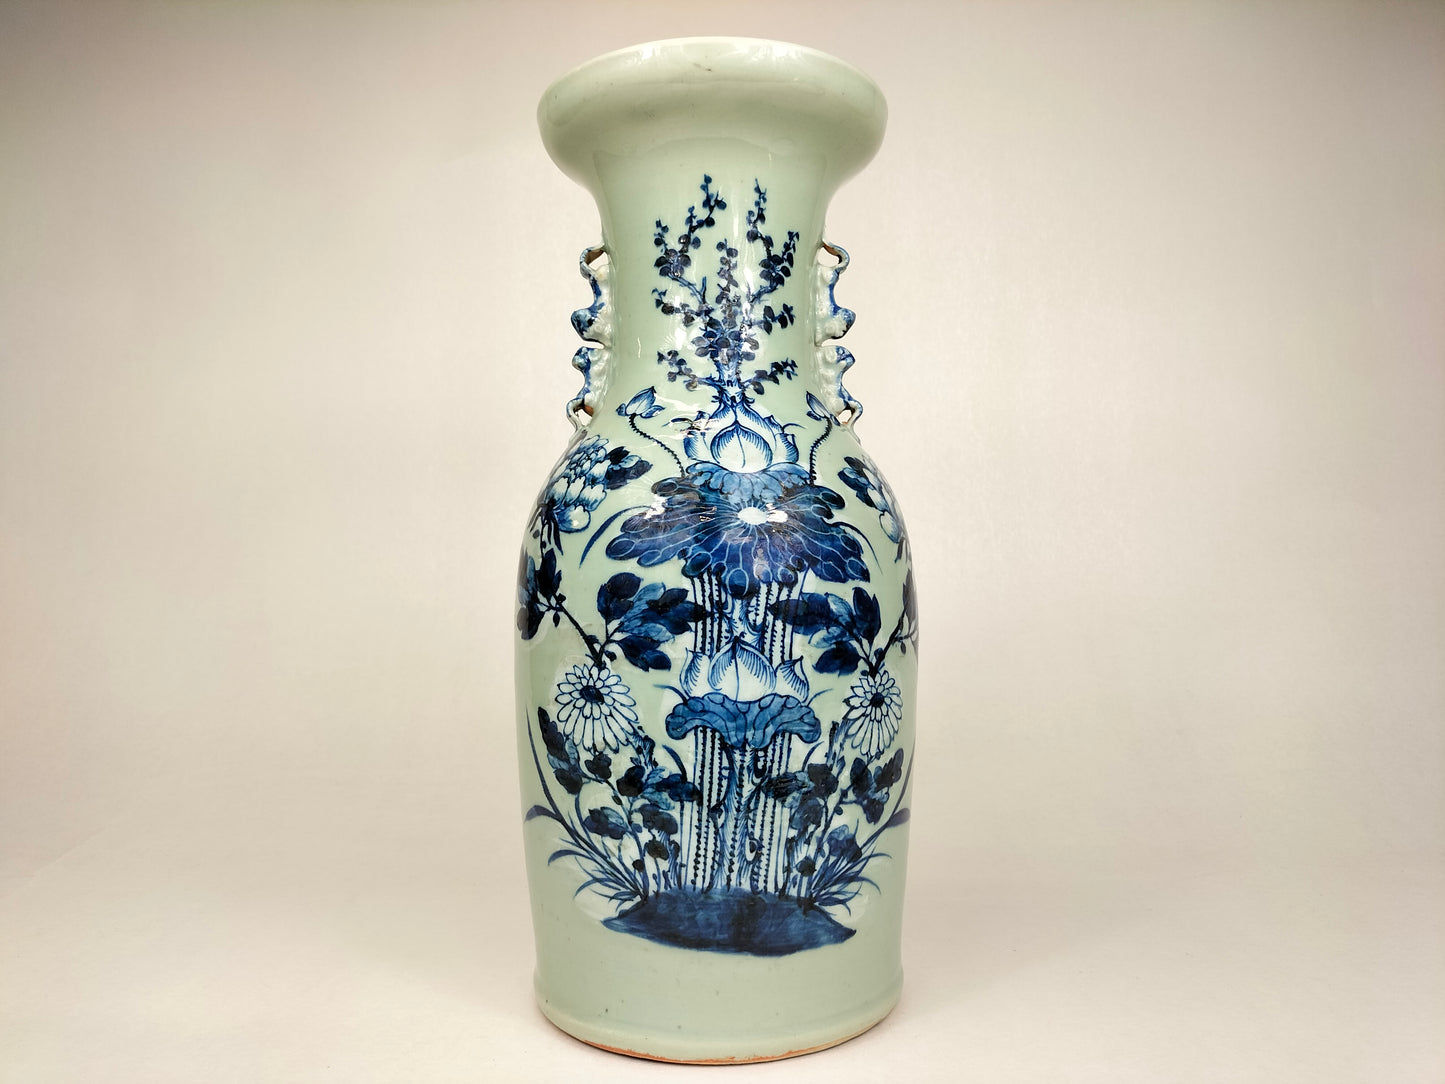 Bình men ngọc cổ Trung Quốc được trang trí bằng hoa sen // Triều đại nhà Thanh - thế kỷ 19